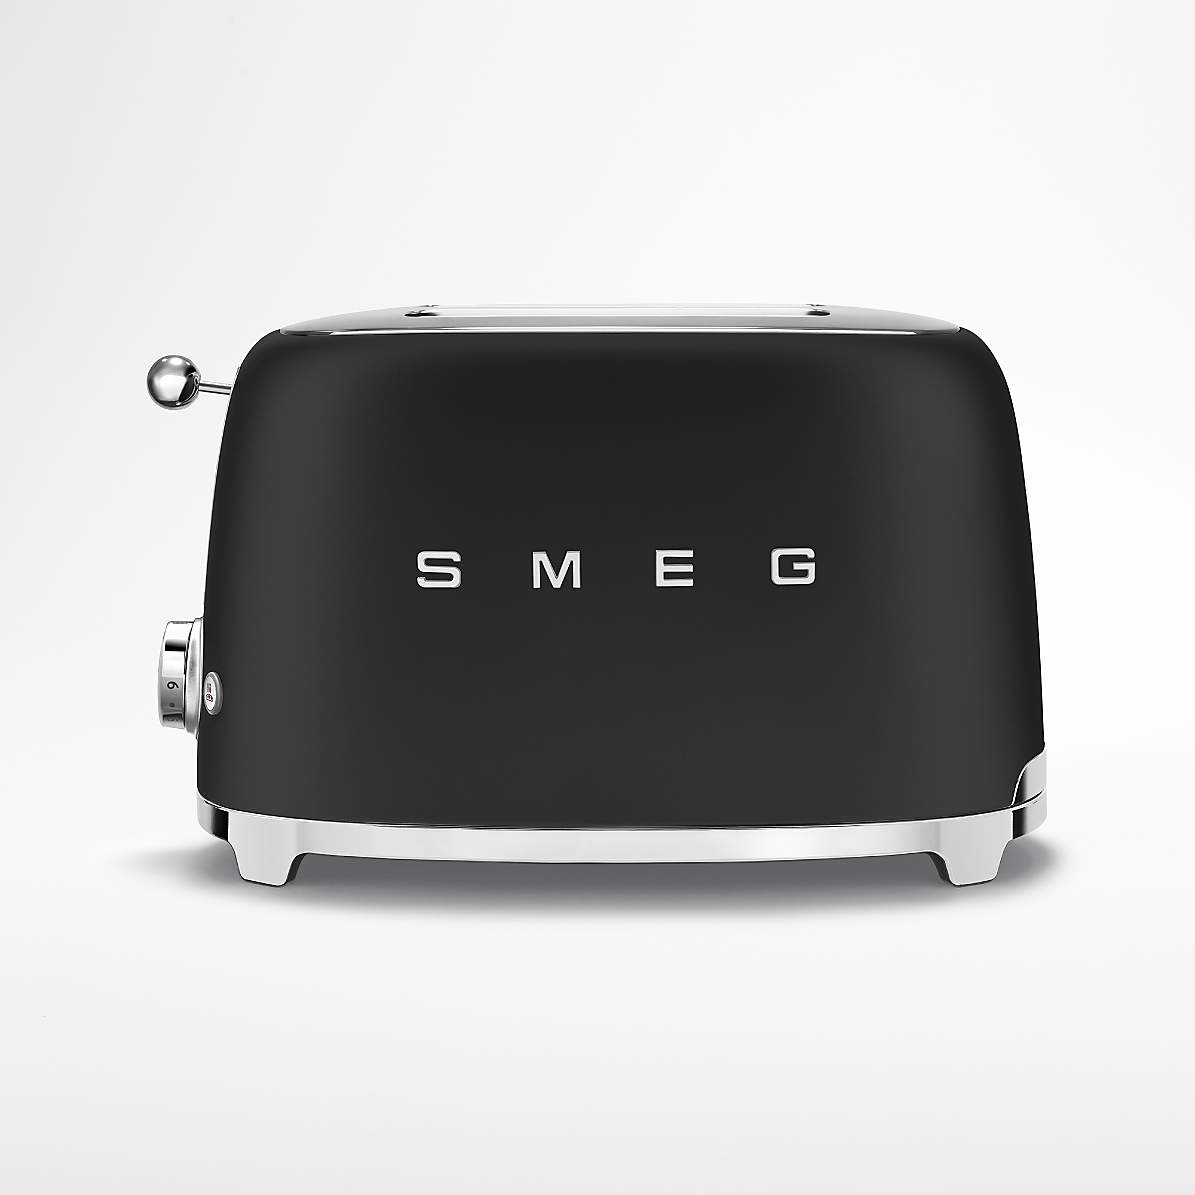 taal Nachtvlek Logisch Smeg Matte Black 2-Slice Toaster + Reviews | Crate & Barrel